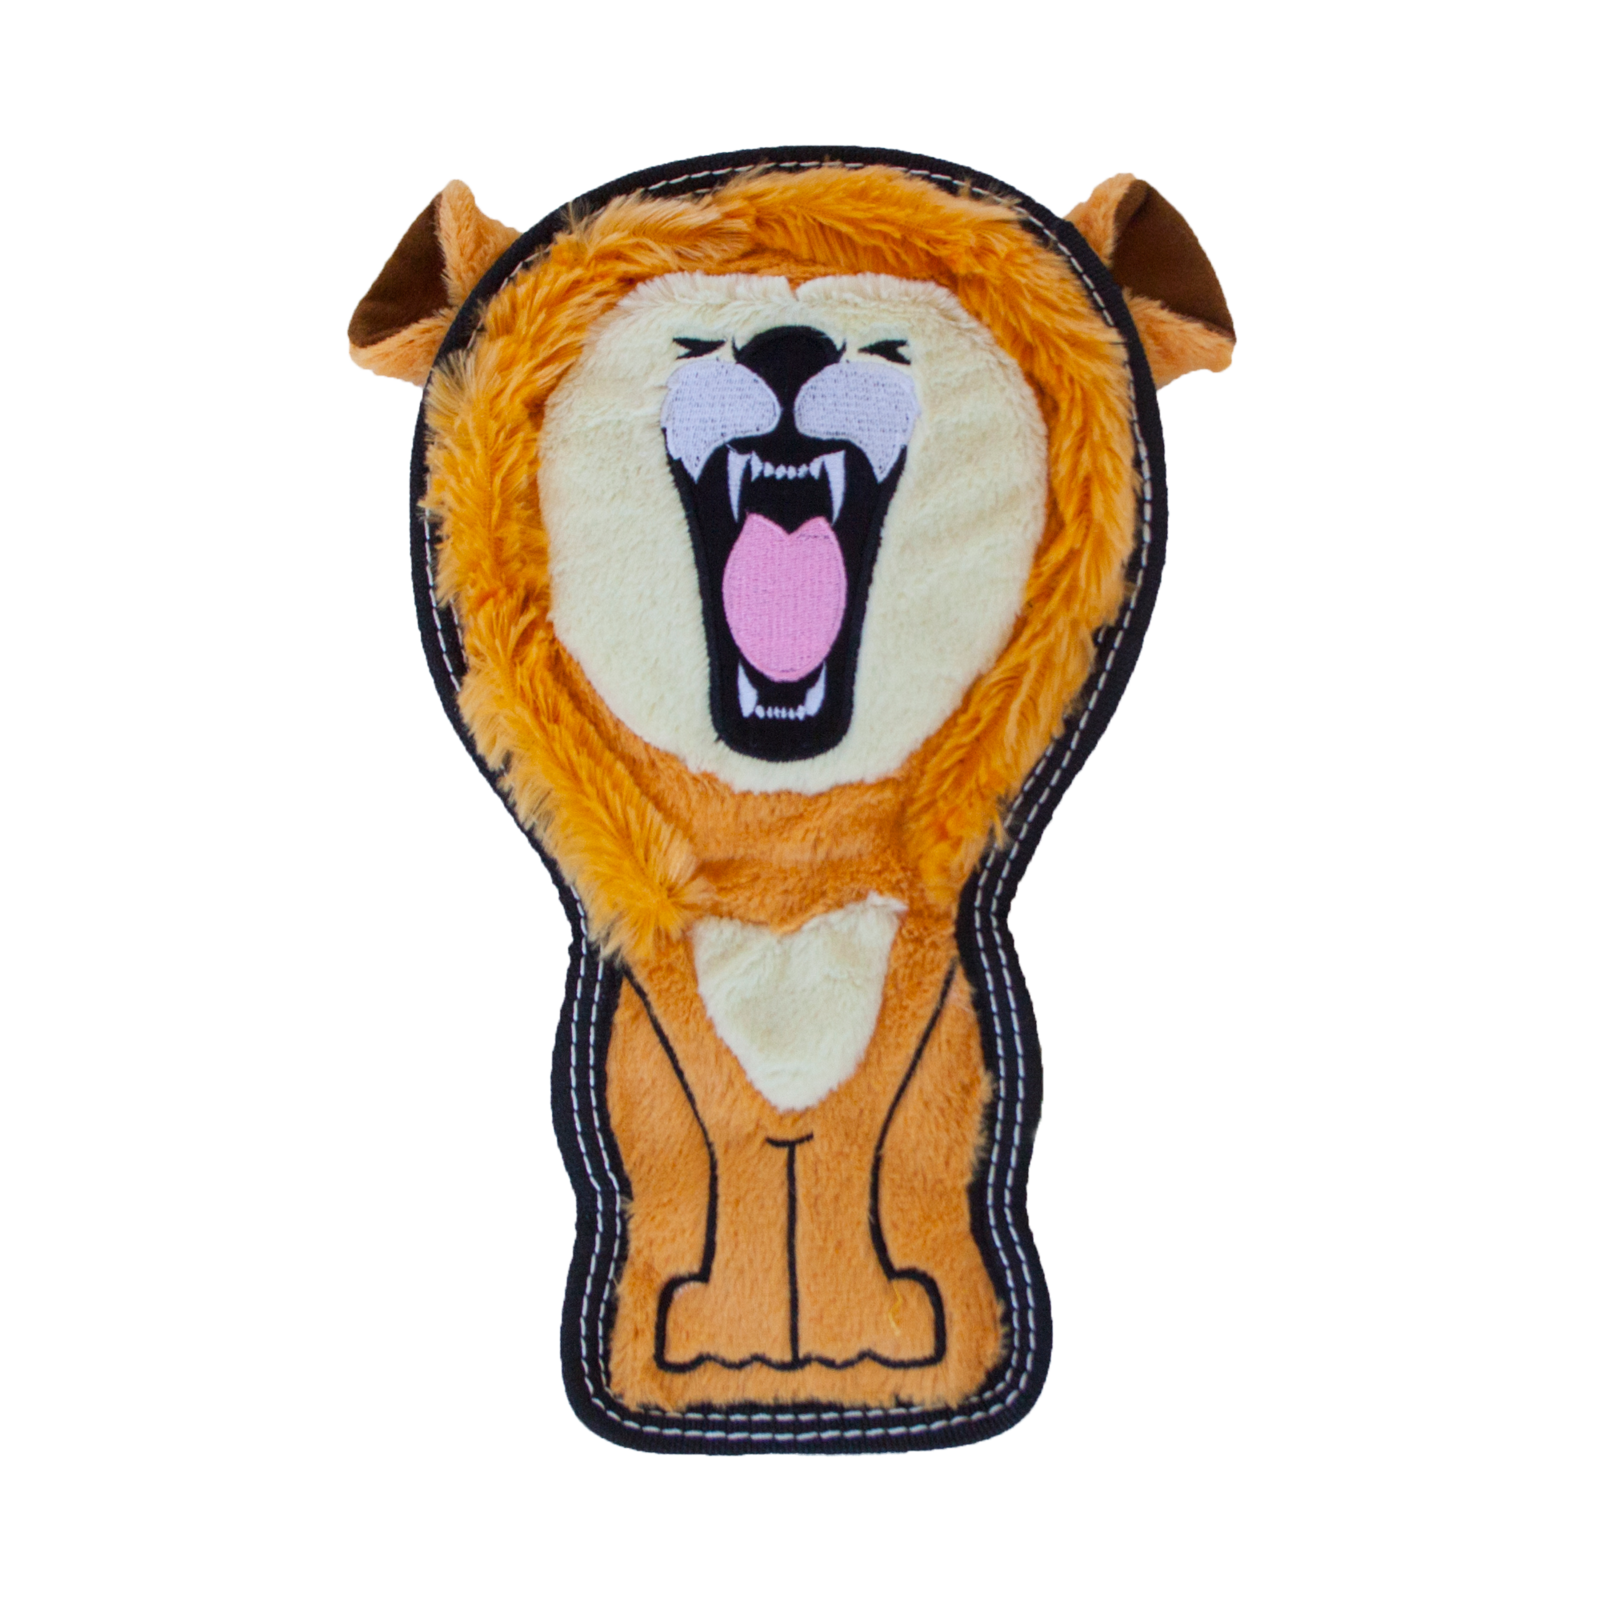 Outward Hound Tough Seamz  Lion Medium  |  No-Stuffing Squeaky Plush Toy